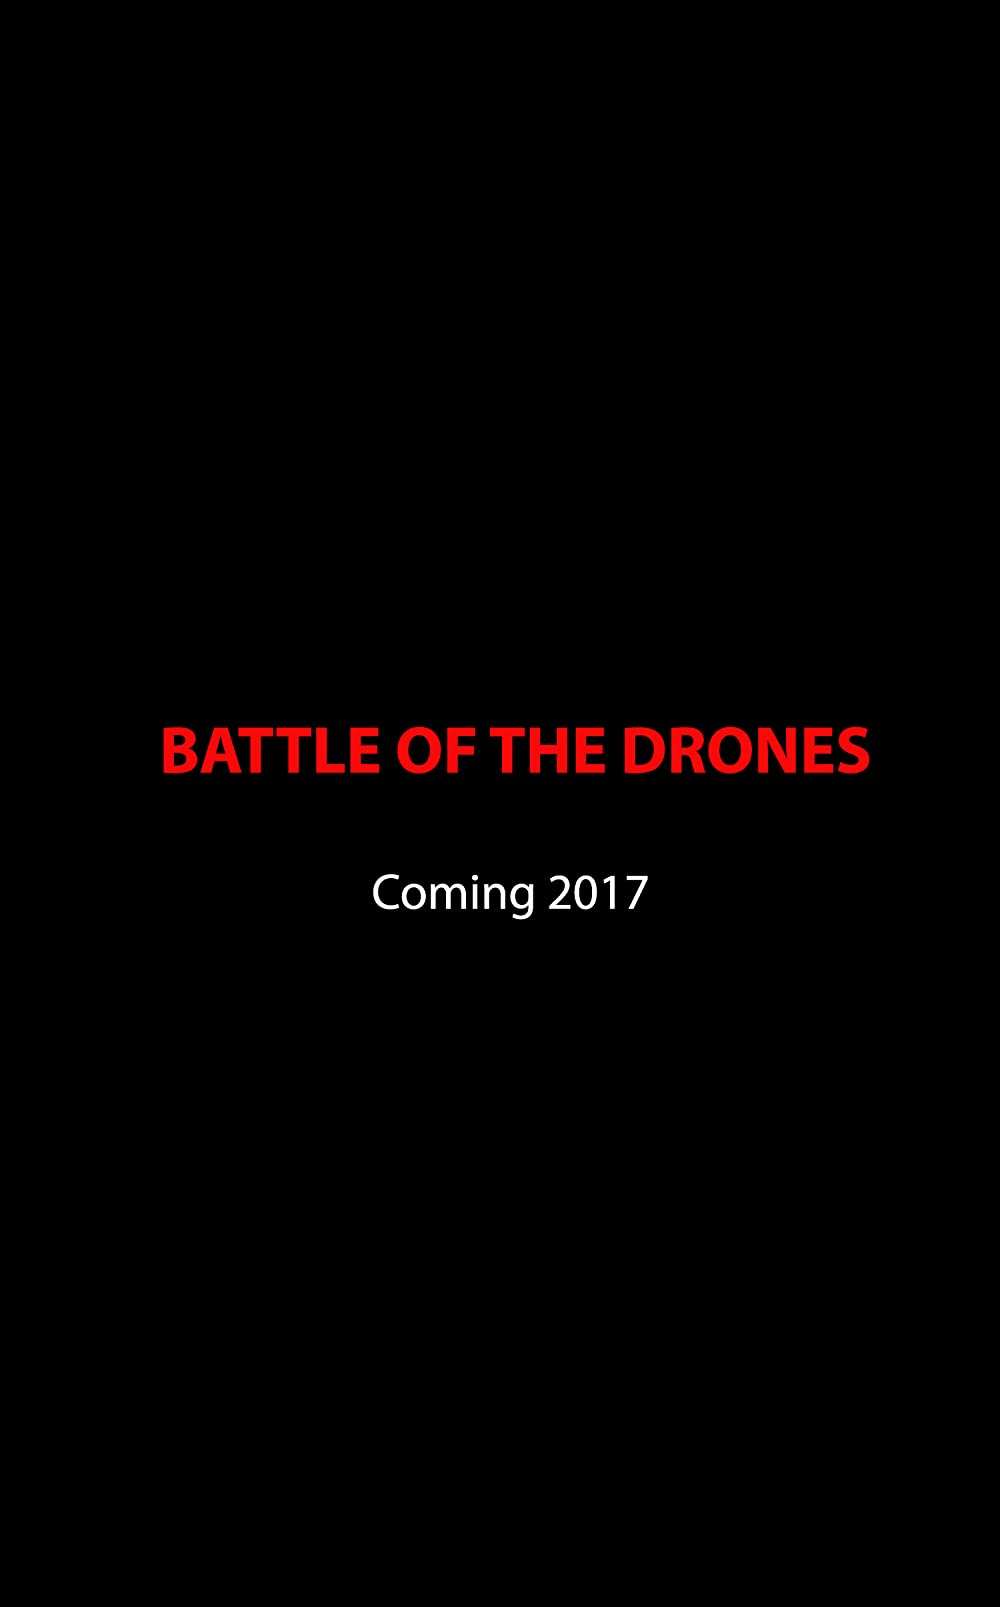 Filmbeschreibung zu Battle Drone